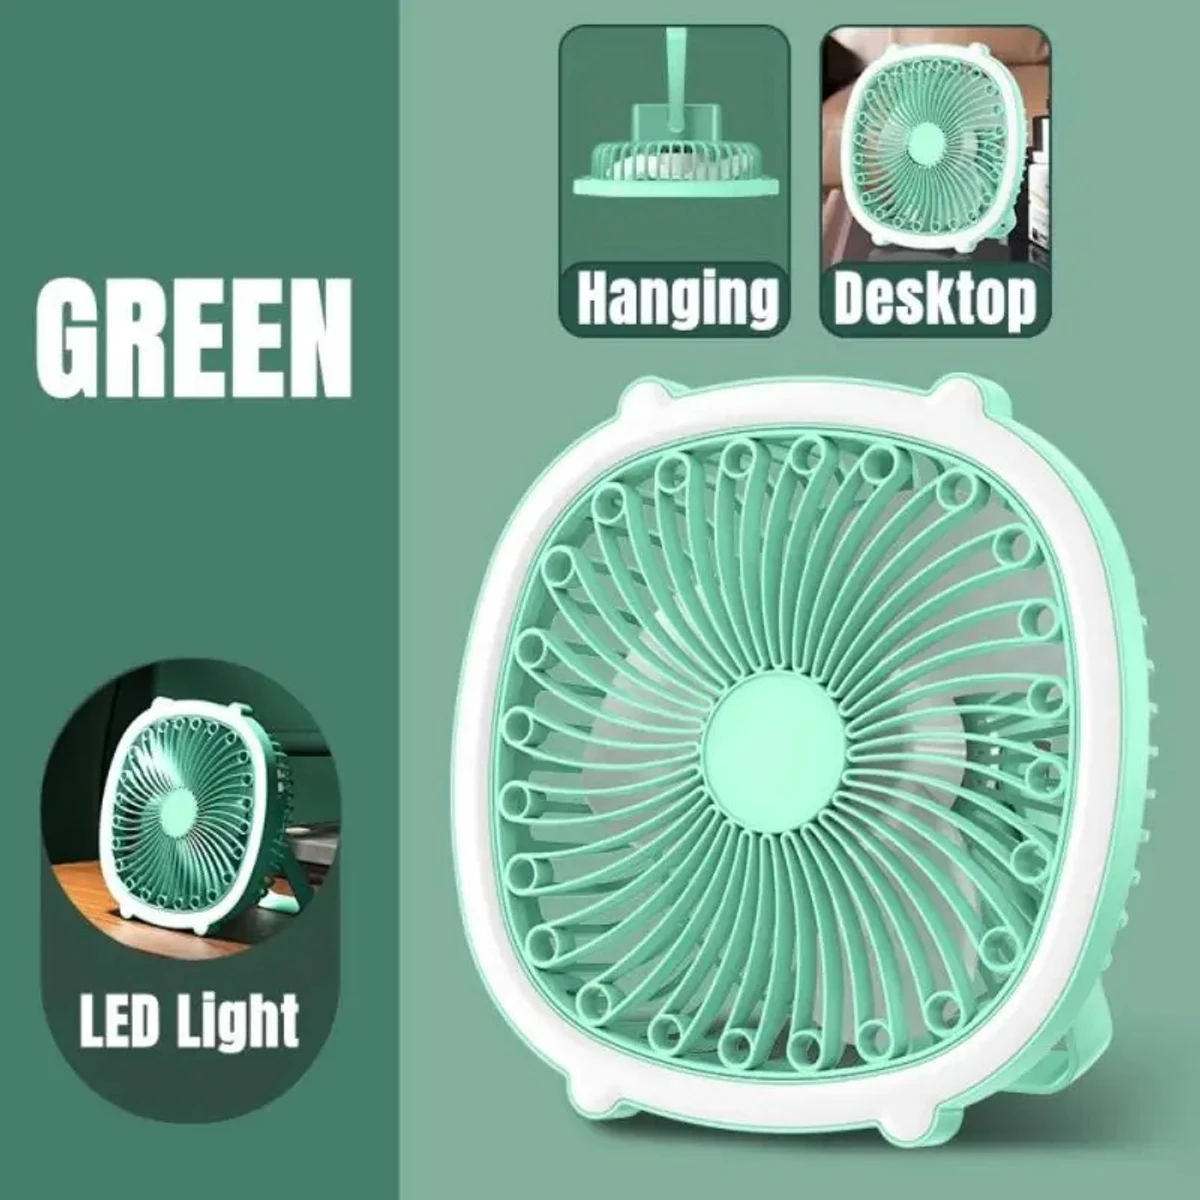 High Quality two-in-one USB charging fan night light fan desktop mini fan with fill light- Green